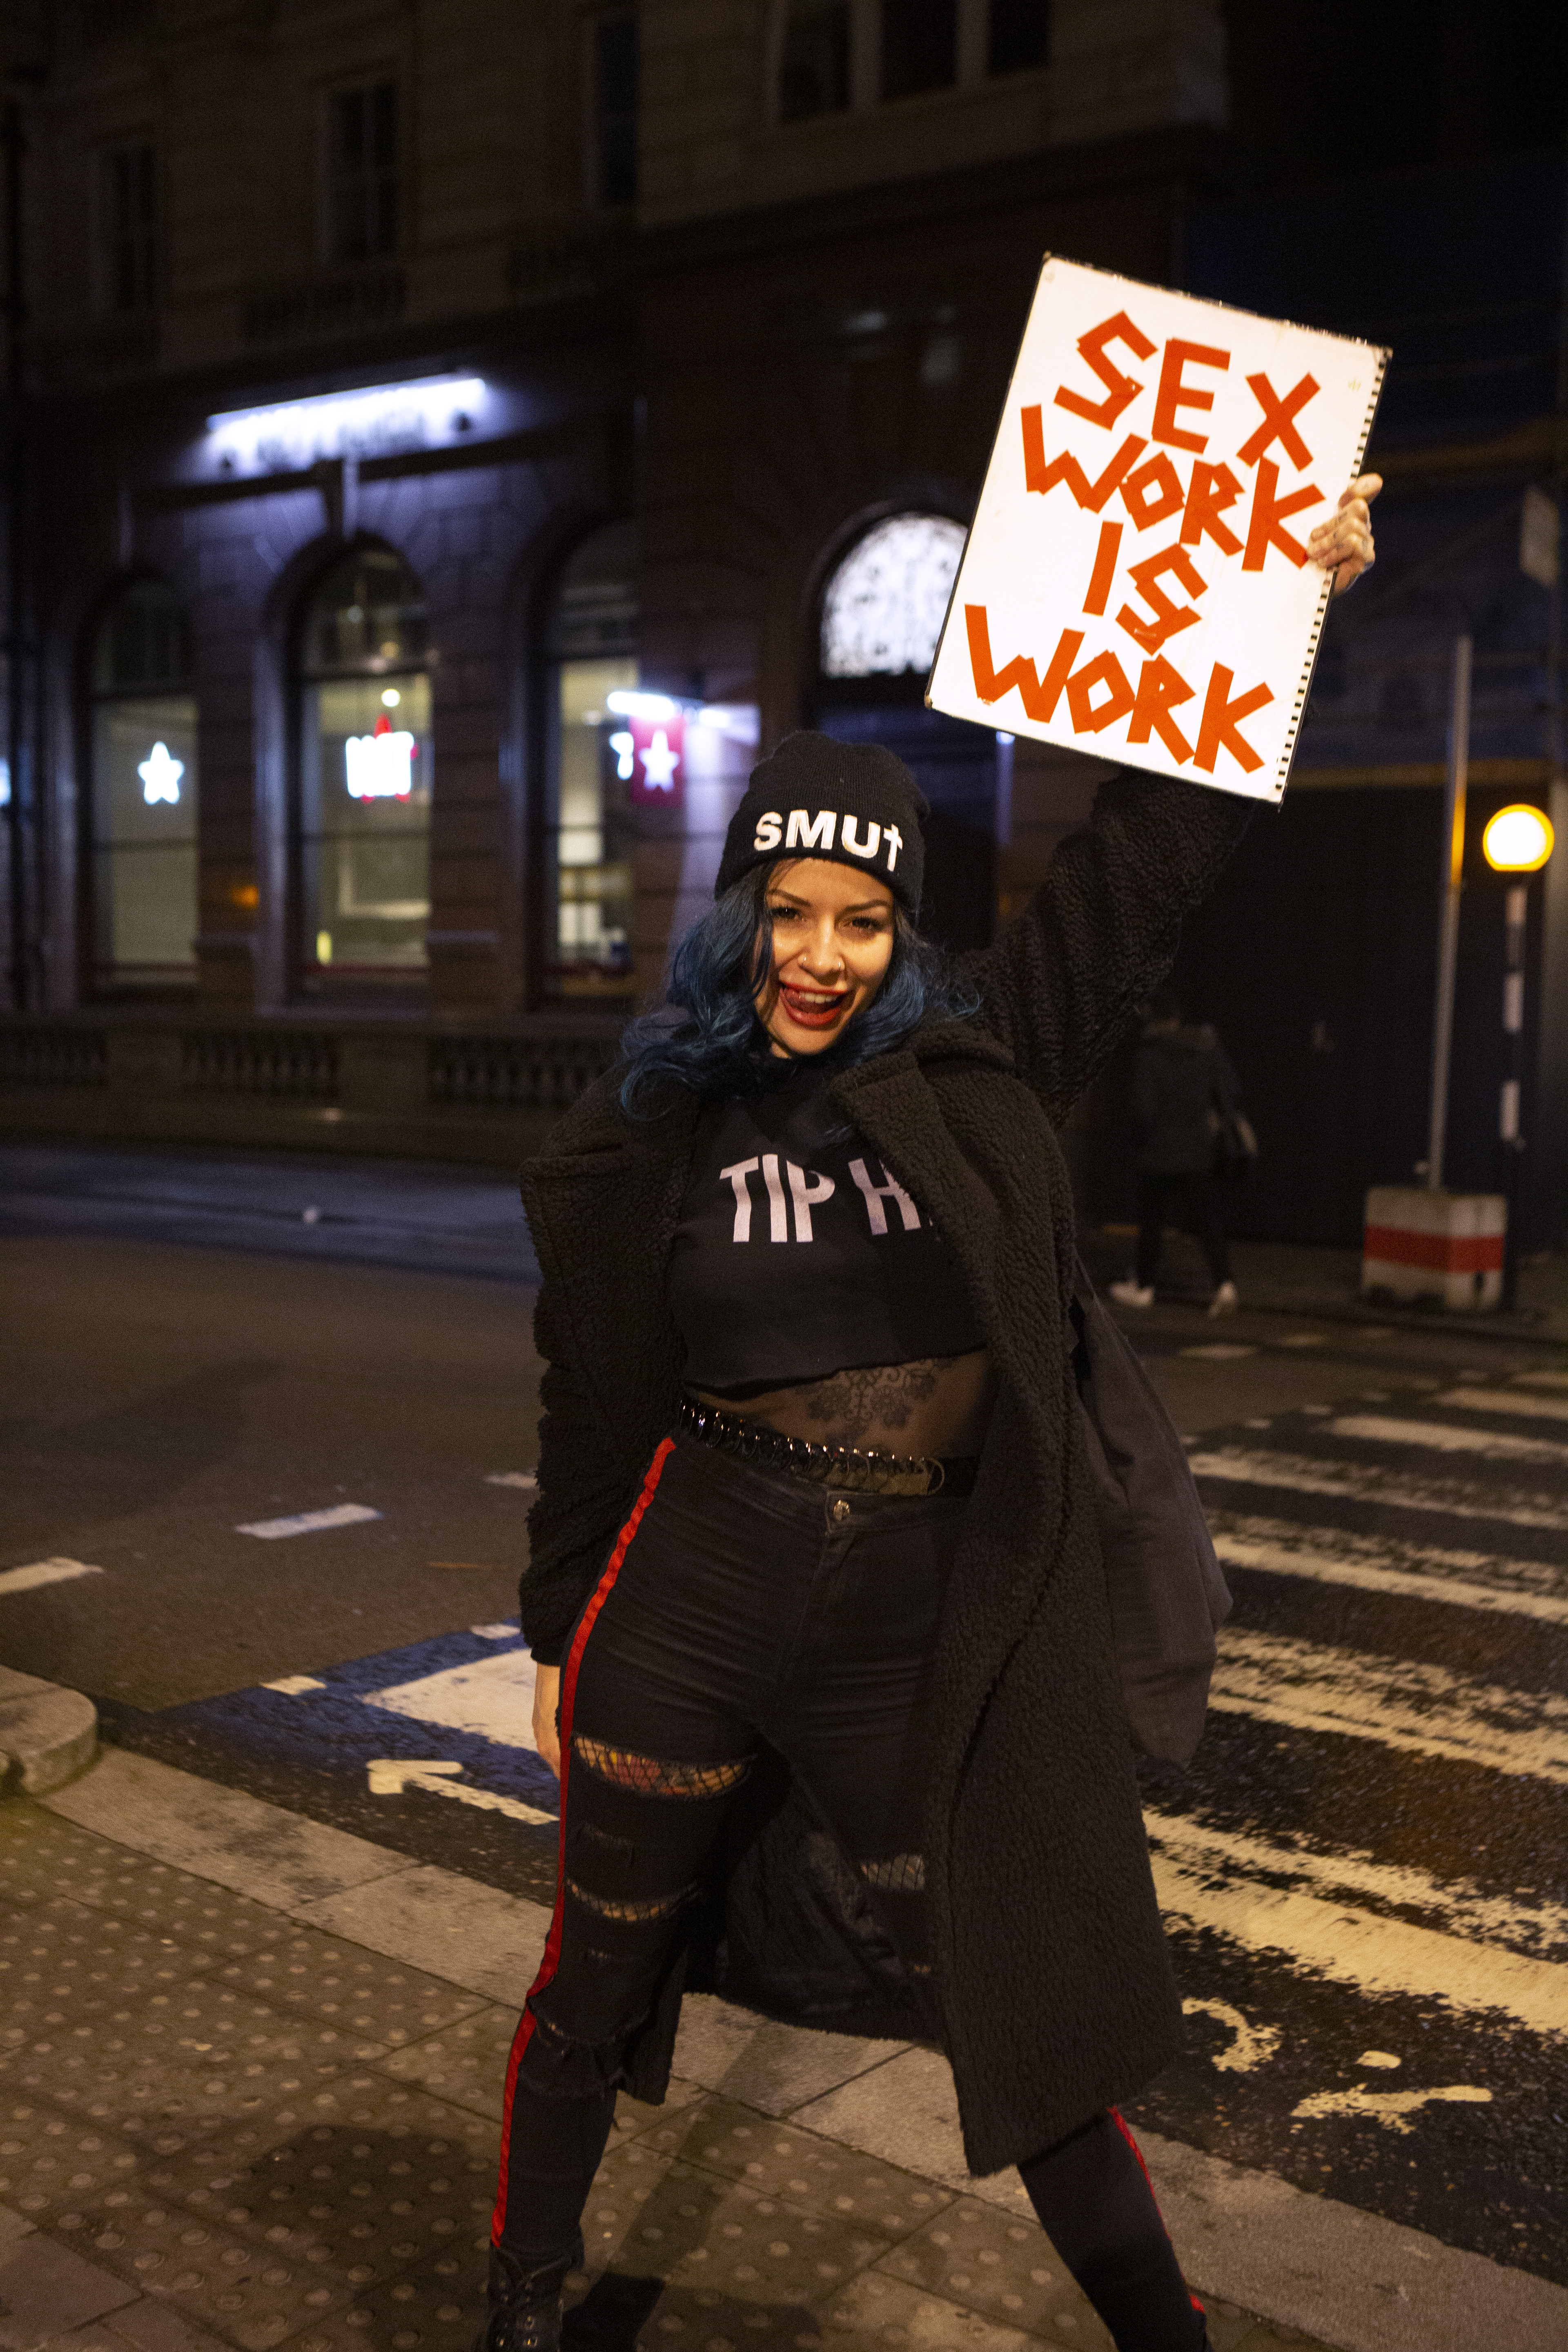 Sex Work Strike 2020 by Zeinab Batchelor